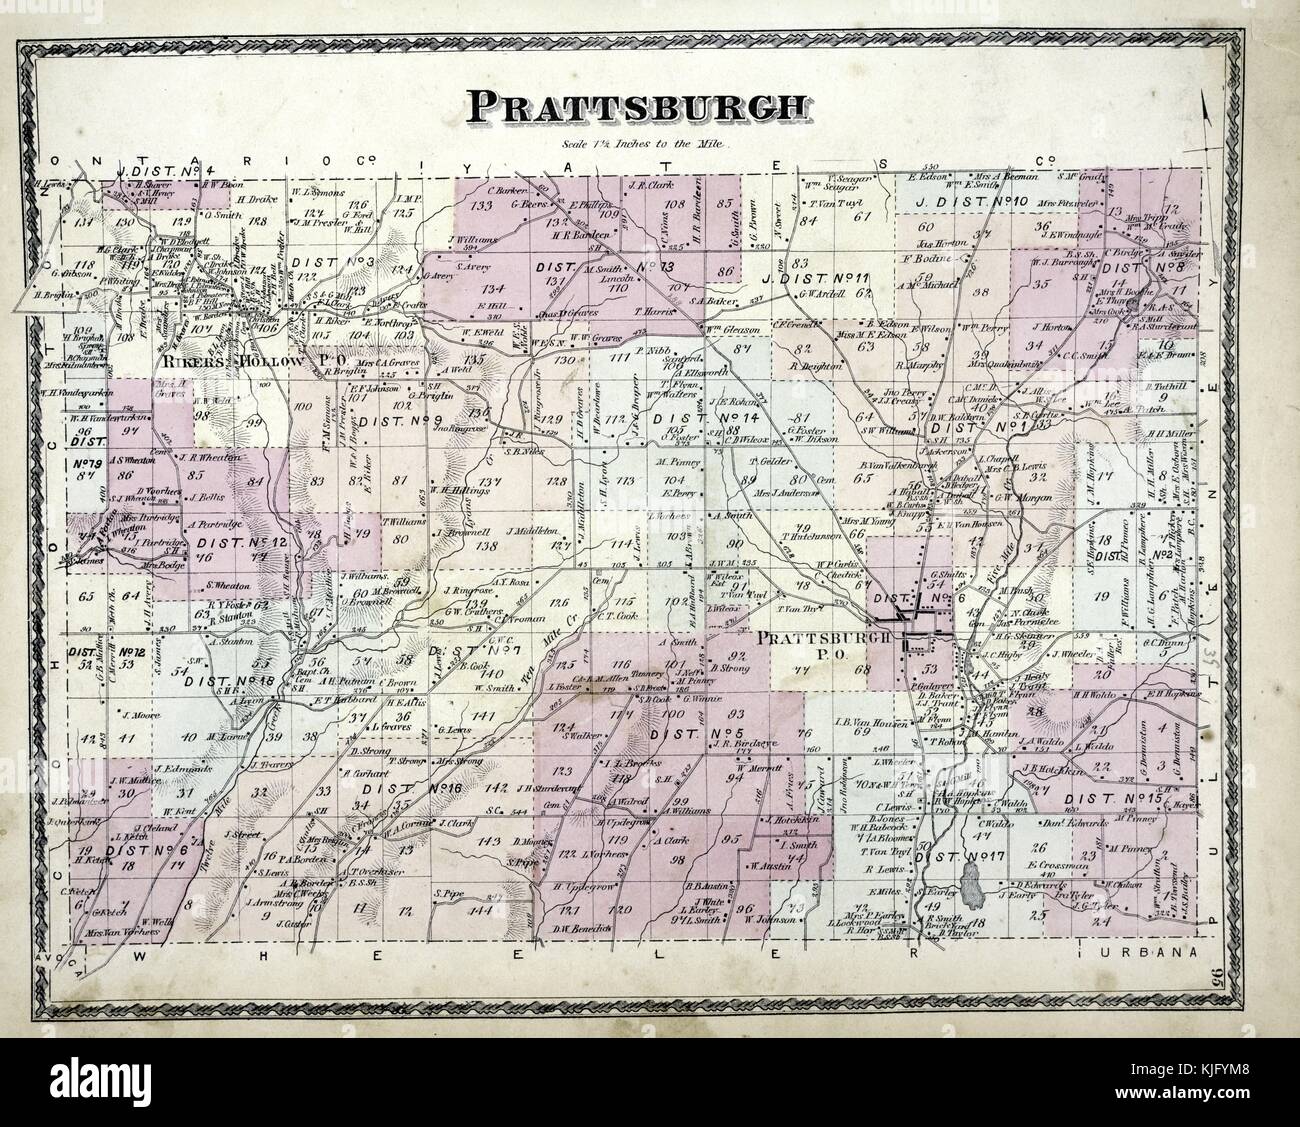 Image cartographique gravée d'un atlas, avec légende originale indiquant 'Prattsburgh Township', 1873. De la Bibliothèque publique de New York. Banque D'Images